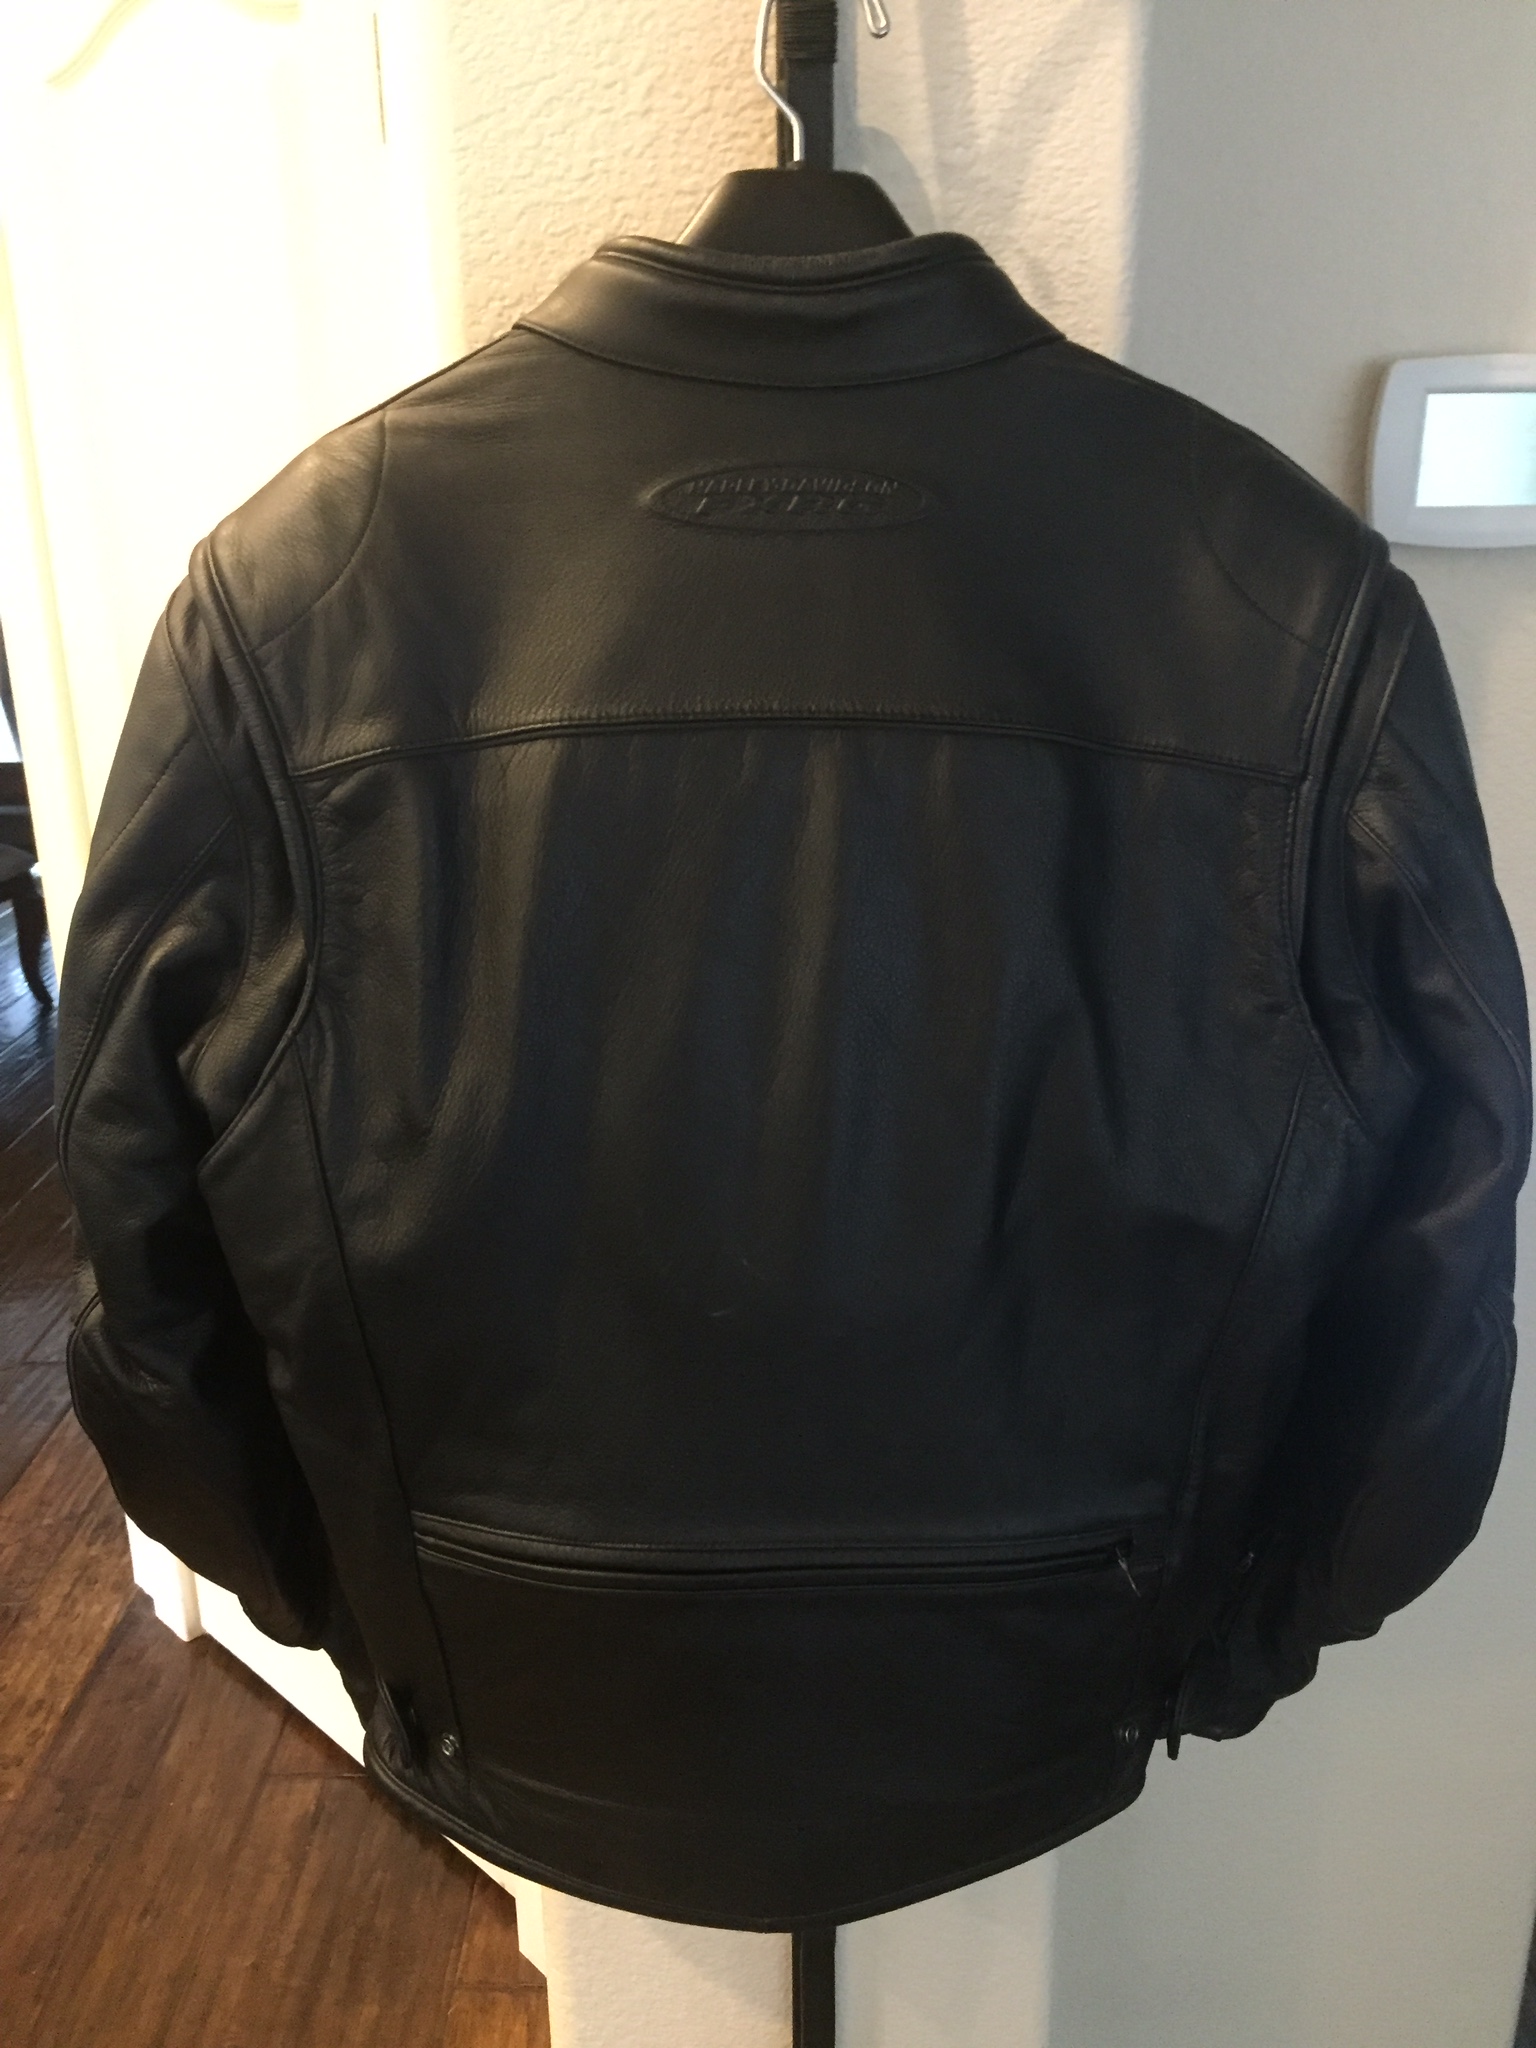 Men's Large FXRG Leather Jacket with 3M Primaloft Liner 98518-05VM ...